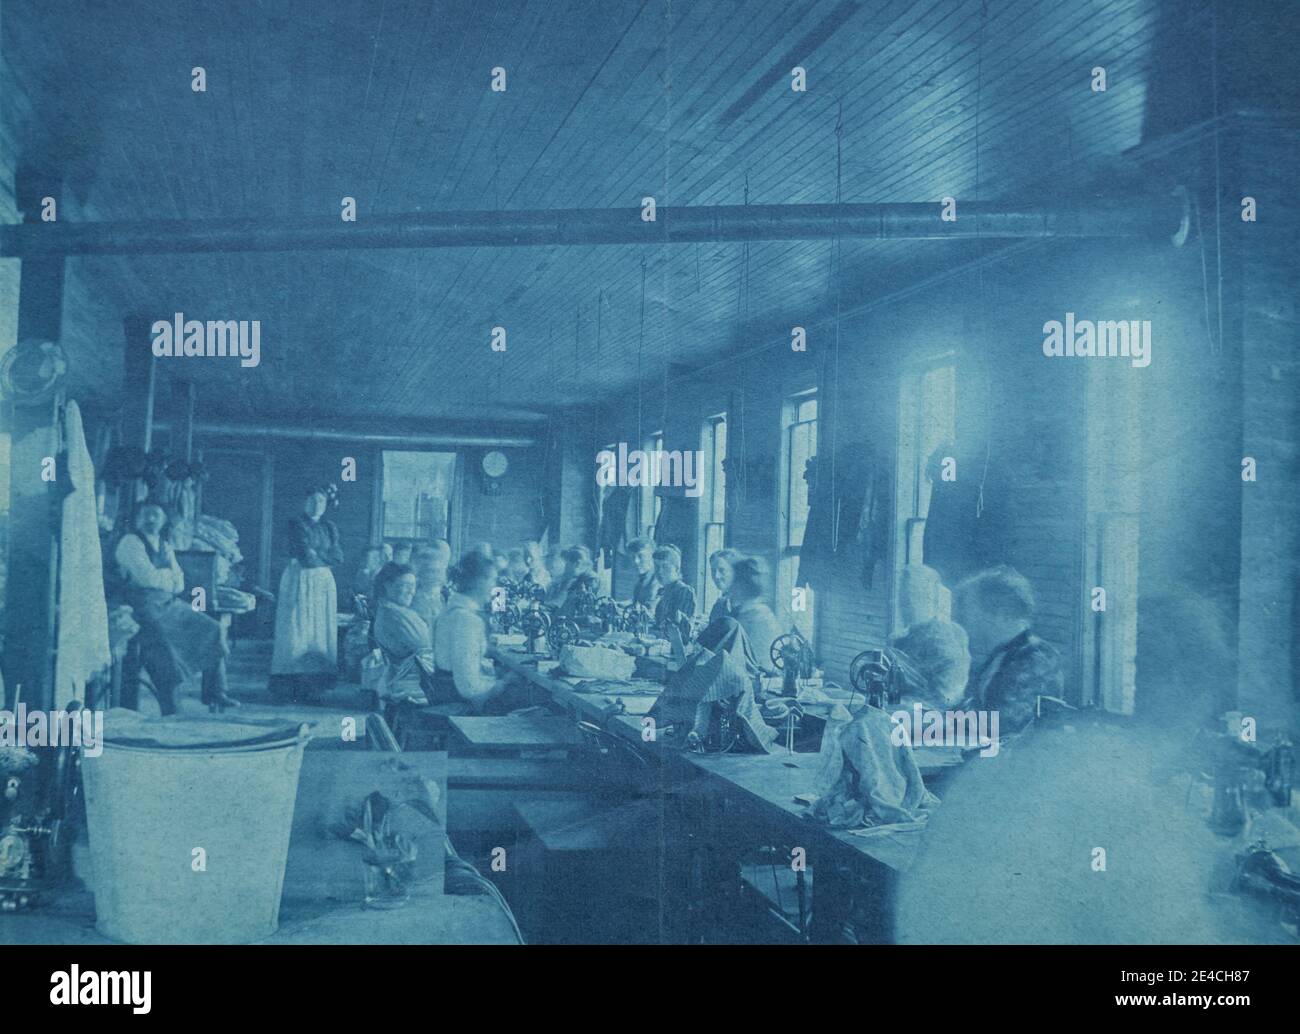 Archive américaine photographie cyanotype des employés ou des travailleurs du département de couture d'une usine travaillant à des tables. Prise à la fin du XIXe siècle à Port Byron, NY, États-Unis Banque D'Images